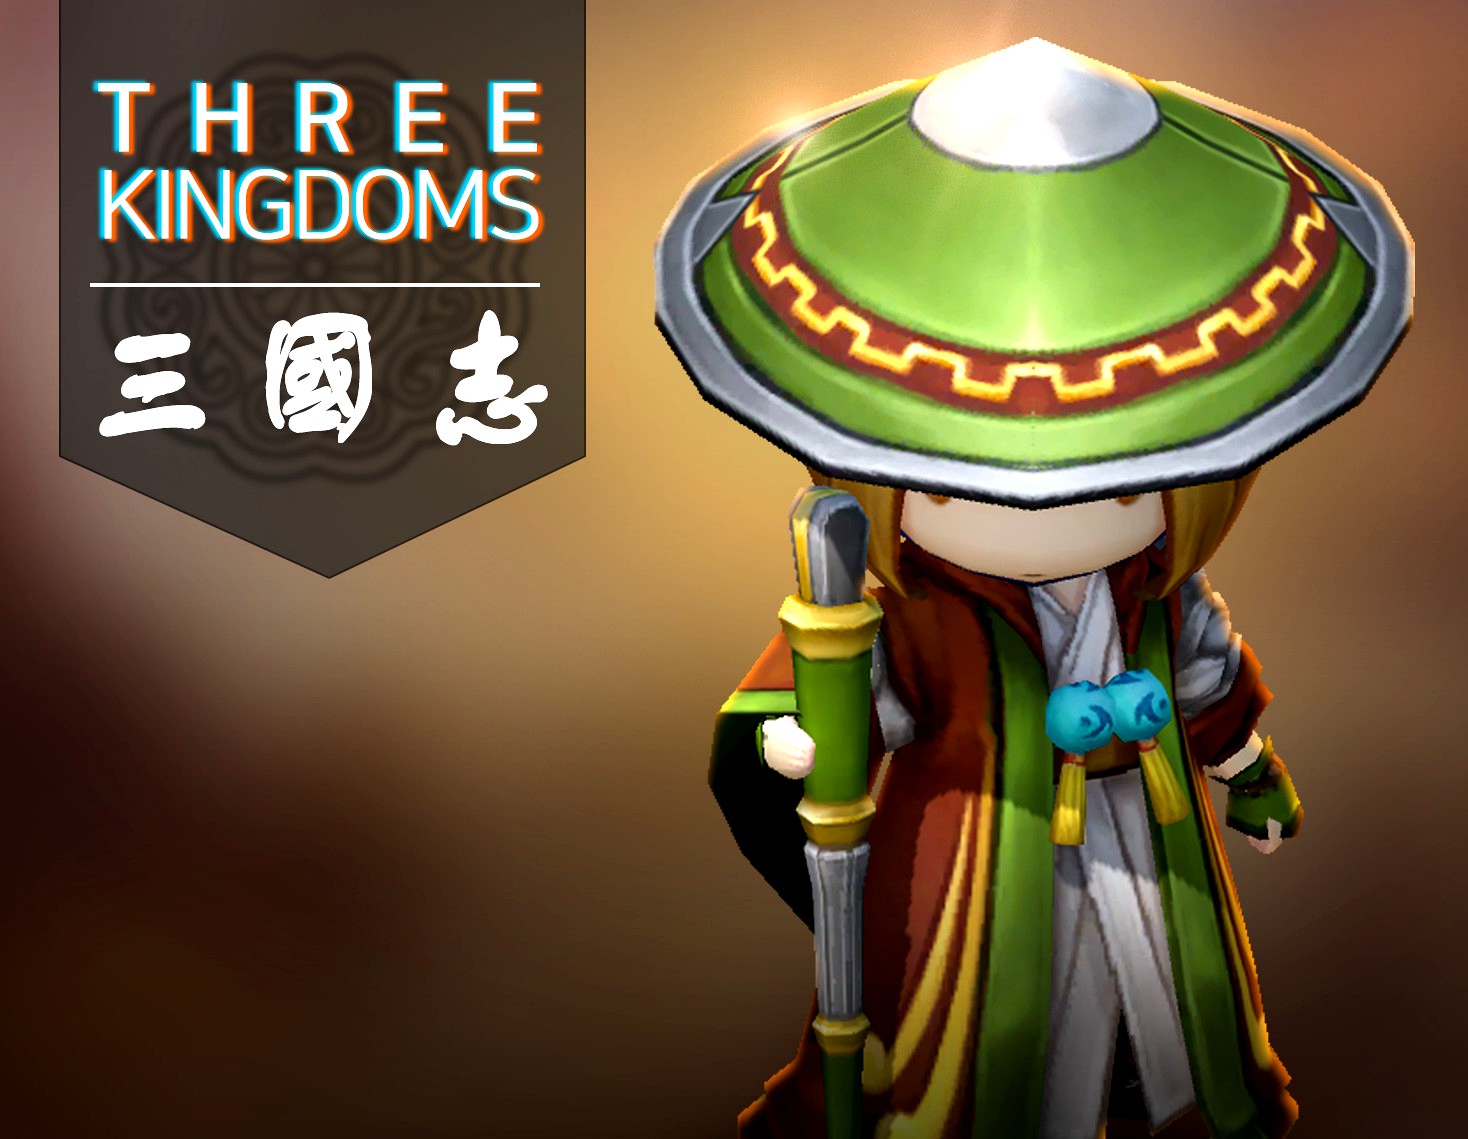 Three kingdoms - Pang Tong